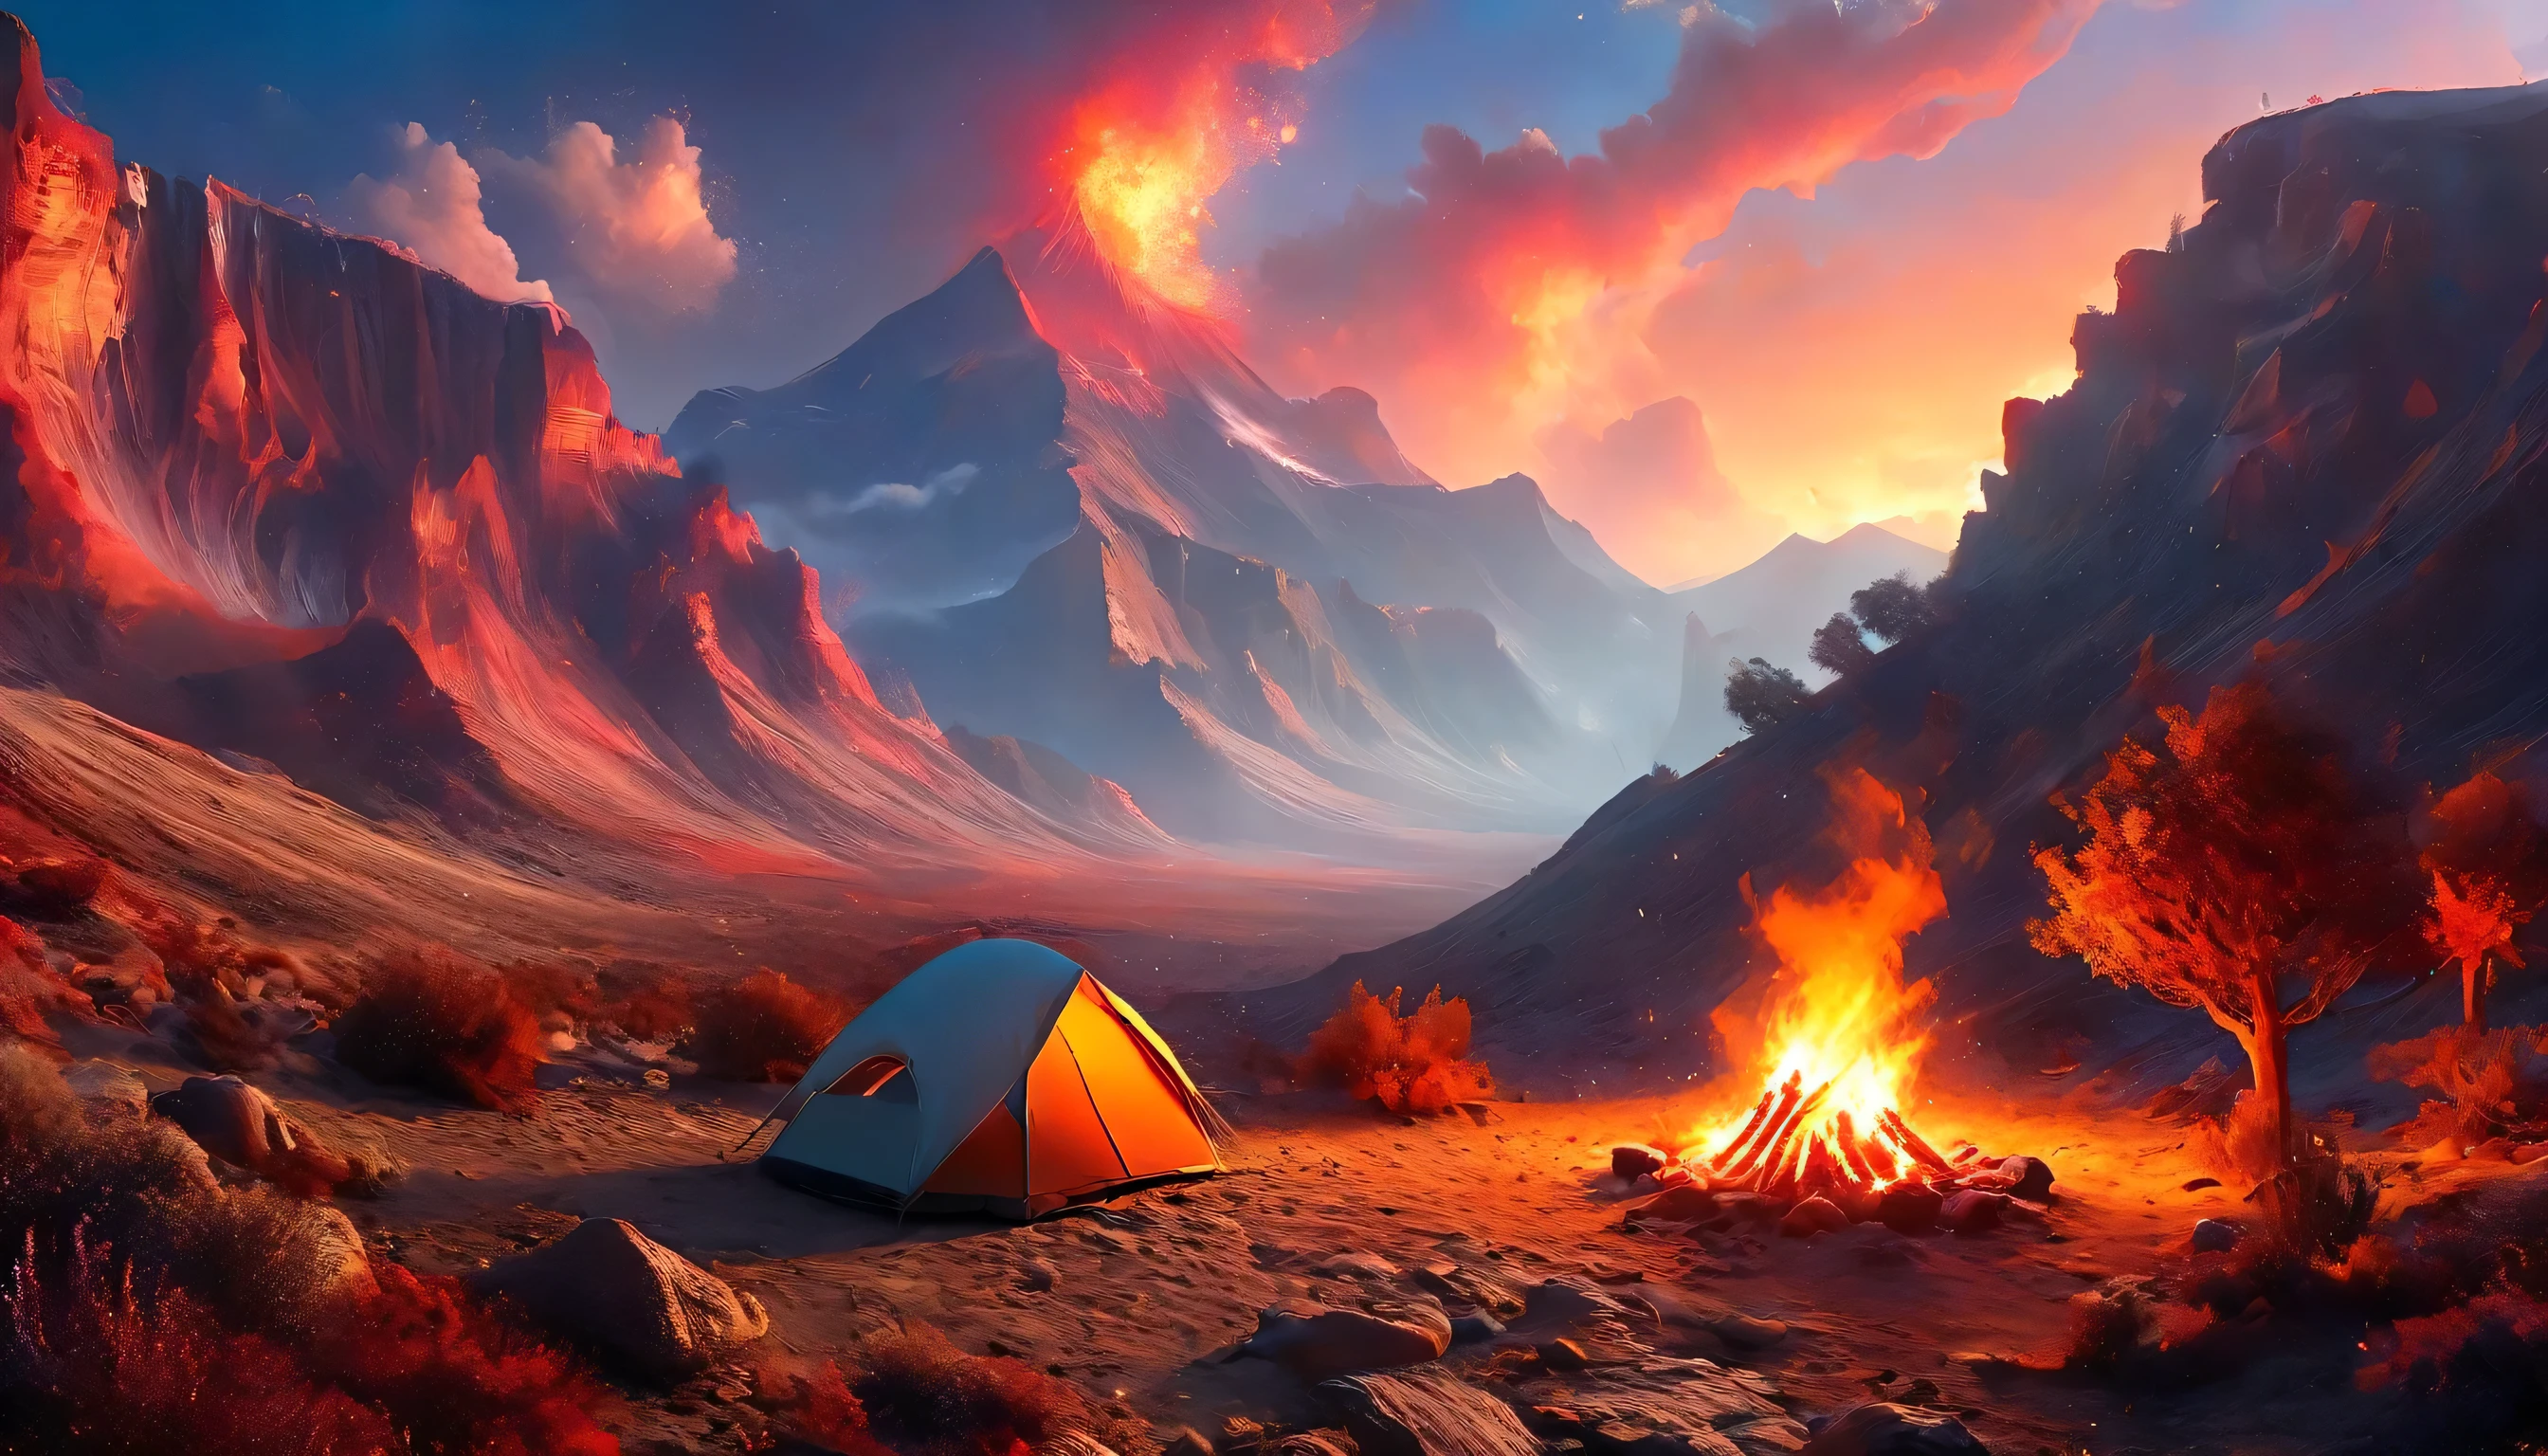 阿拉菲德, 一张露营的照片 (帐篷: 1.2) 和小 (营火: 1.3), 在沙漠山顶上, 日落时分的天空呈现出各种色调  (红色的: 1.1), (橙子: 1.1), (天蓝色: 1.1) (紫色的:1.1) 篝火营地冒出浓烟, 这里有壮丽的沙漠峡谷和沟壑景观, 地平线上稀疏的树木, 这是一个宁静的时刻, 和平, 和放松, 最好的质量, 16千,  照相写实主义, 国家地理摄影大赛获奖作品, 超广角拍摄, 狂暴星云, 女士影子